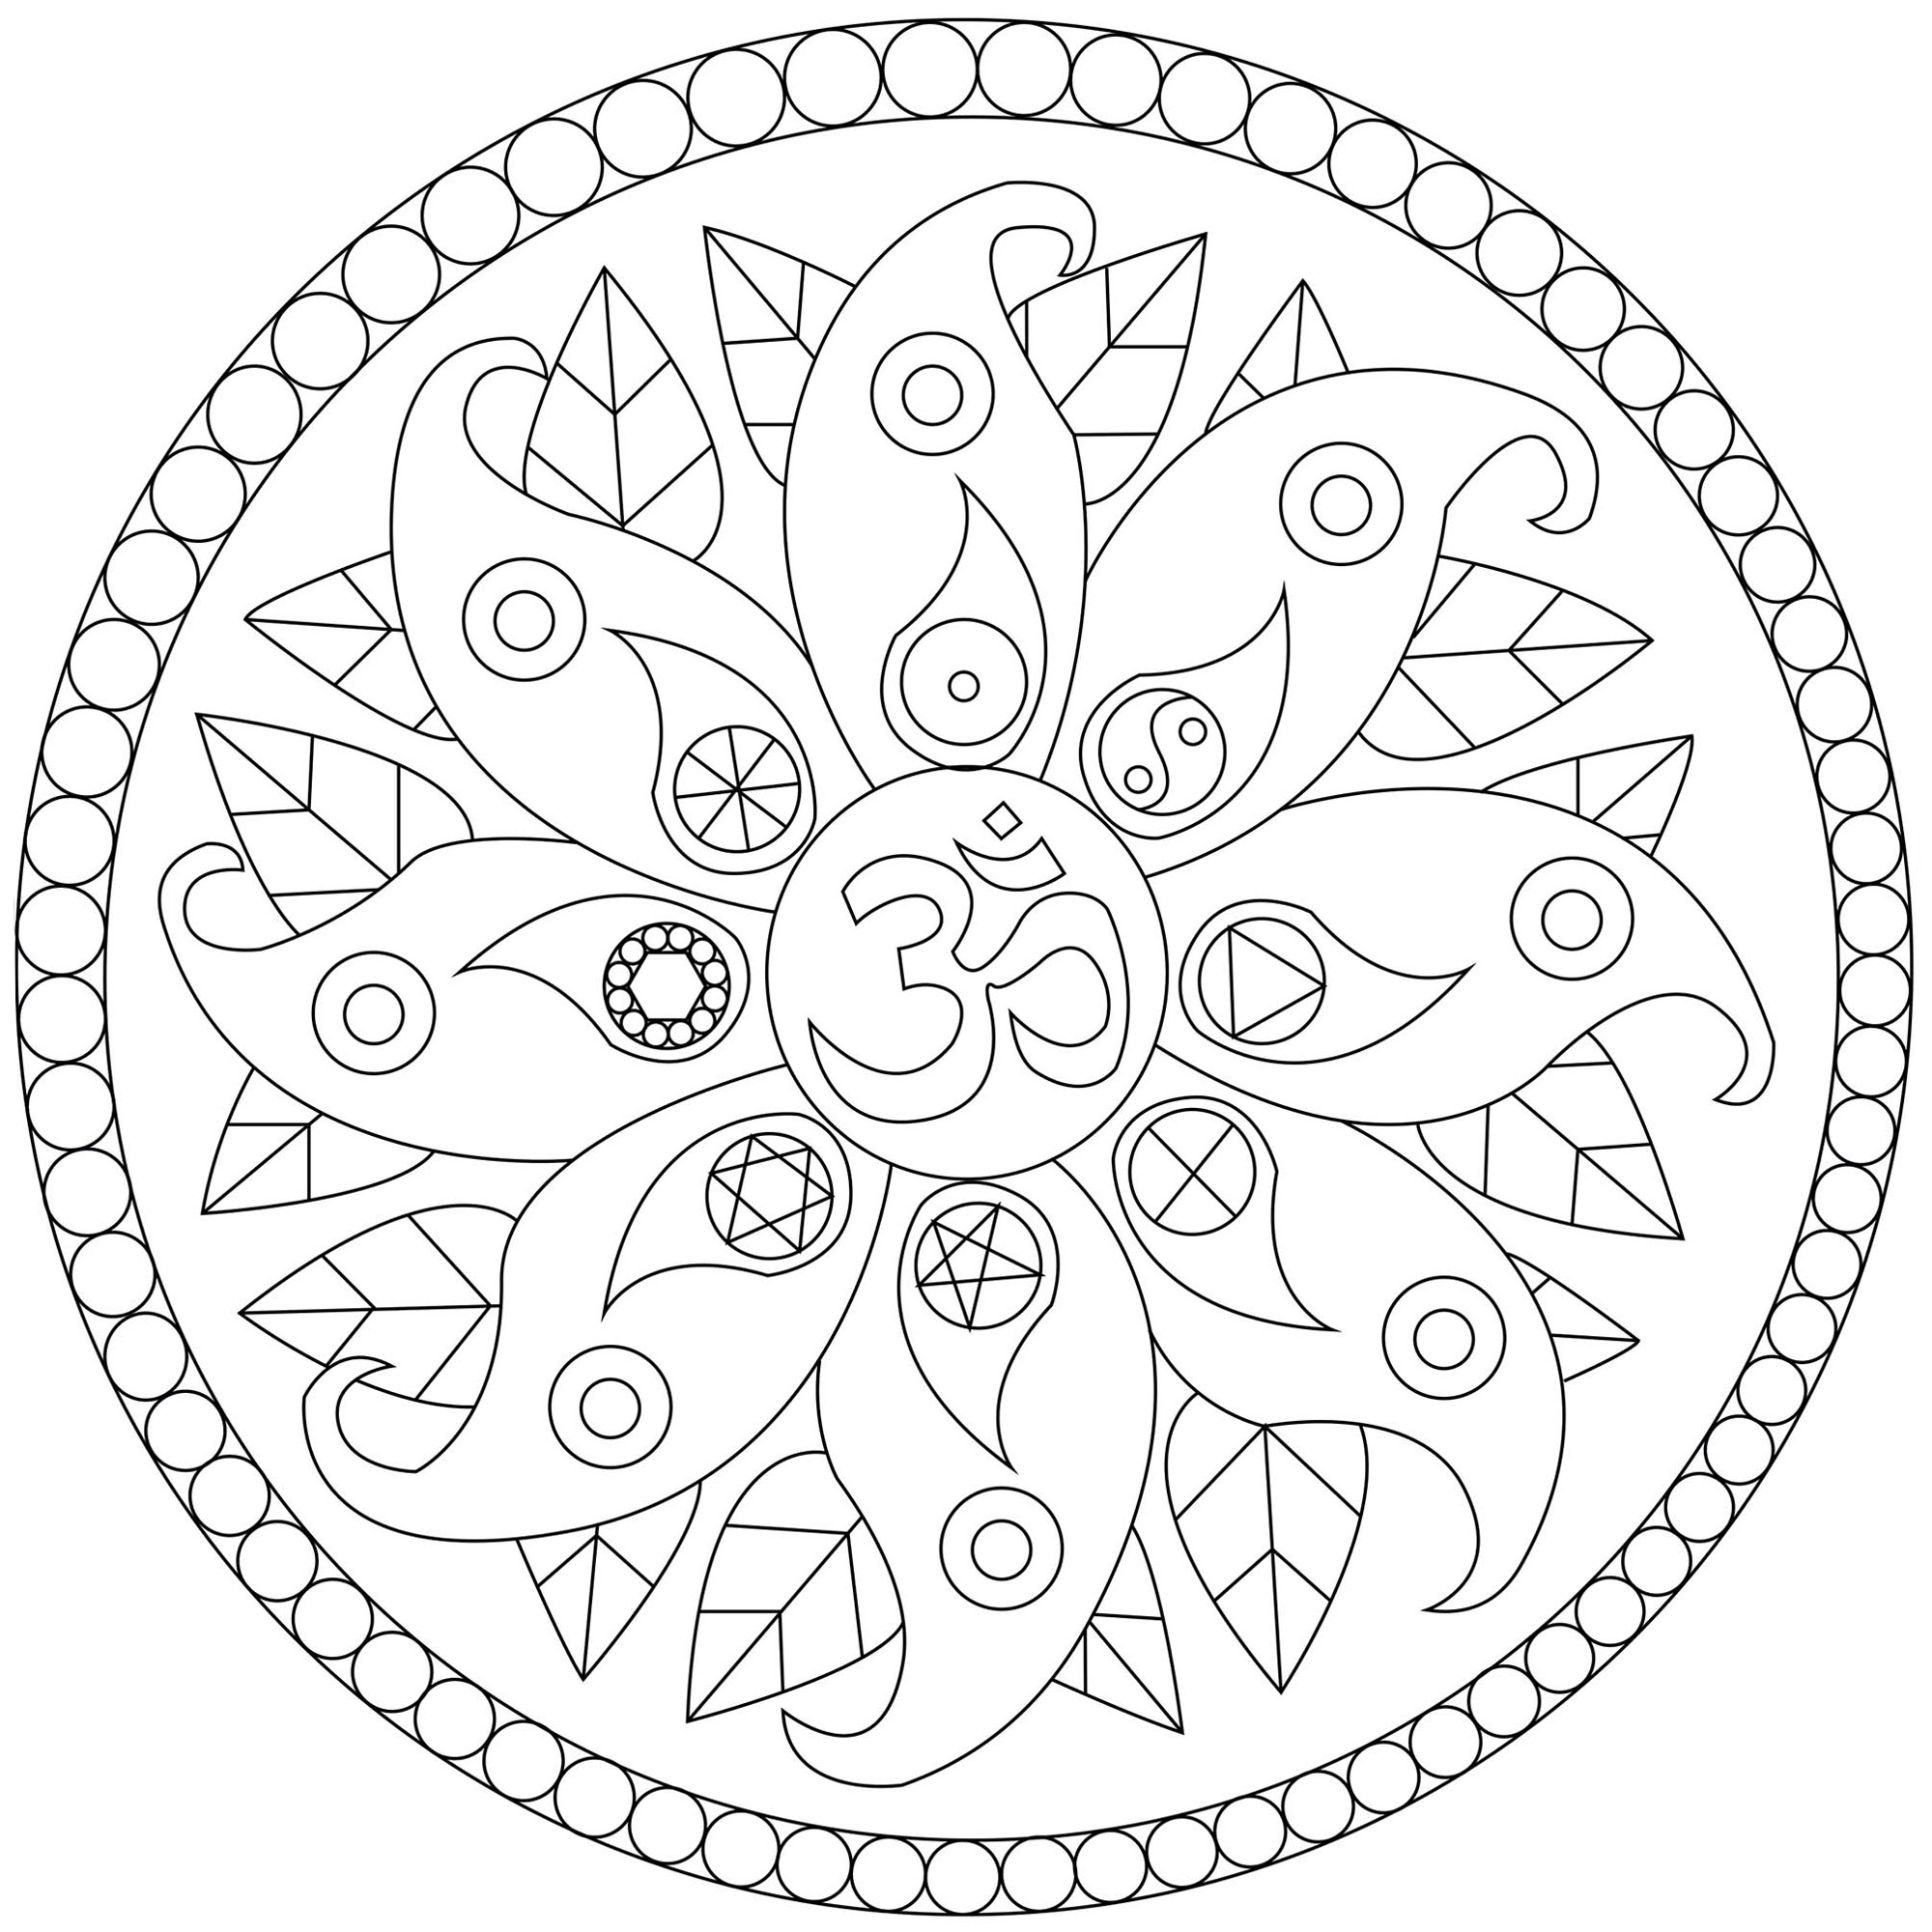 Mandala mit verschiedenen Symbolen : Om, Yin und Yang ... Eine Malvorlage voller Frieden, Künstler : Caillou